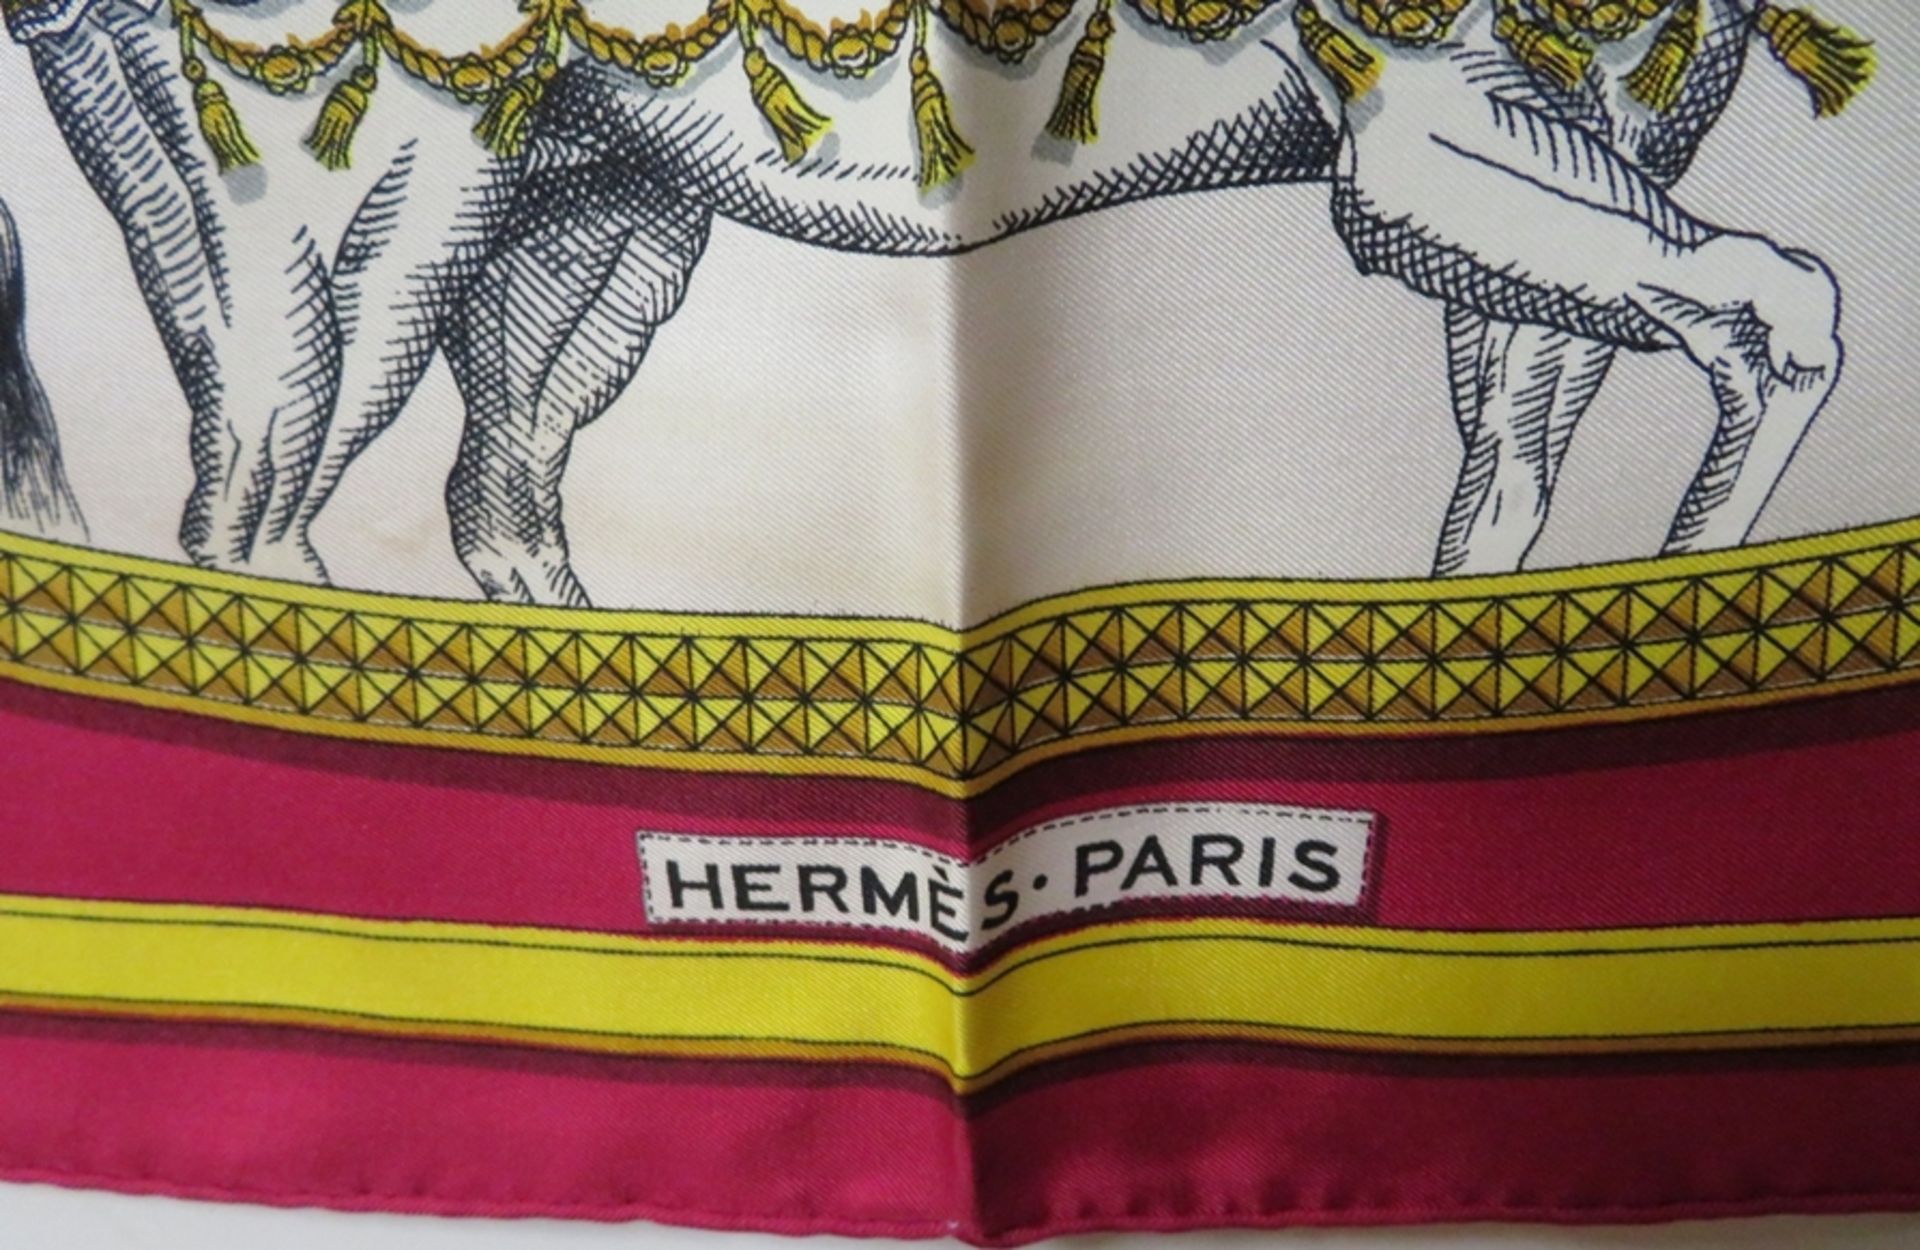 Seidentuch/Carré, Hermès Paris, Grand Apparat, Entwurf Jacques Eudel, 100% Seide, sign., Tragespure - Image 2 of 4